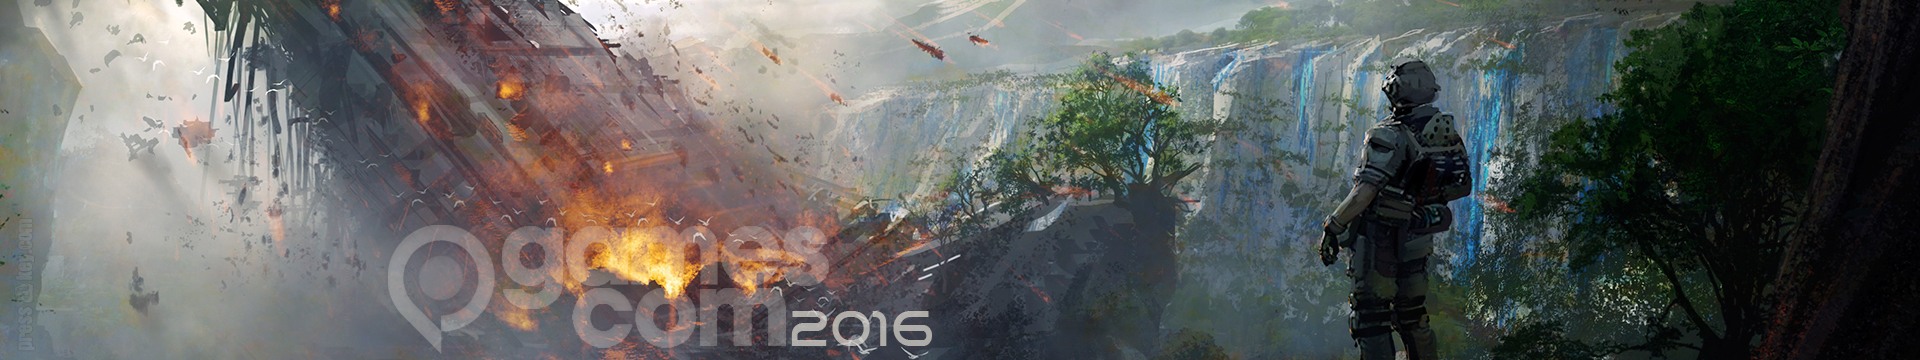 gamescom 2016 - Eventserie